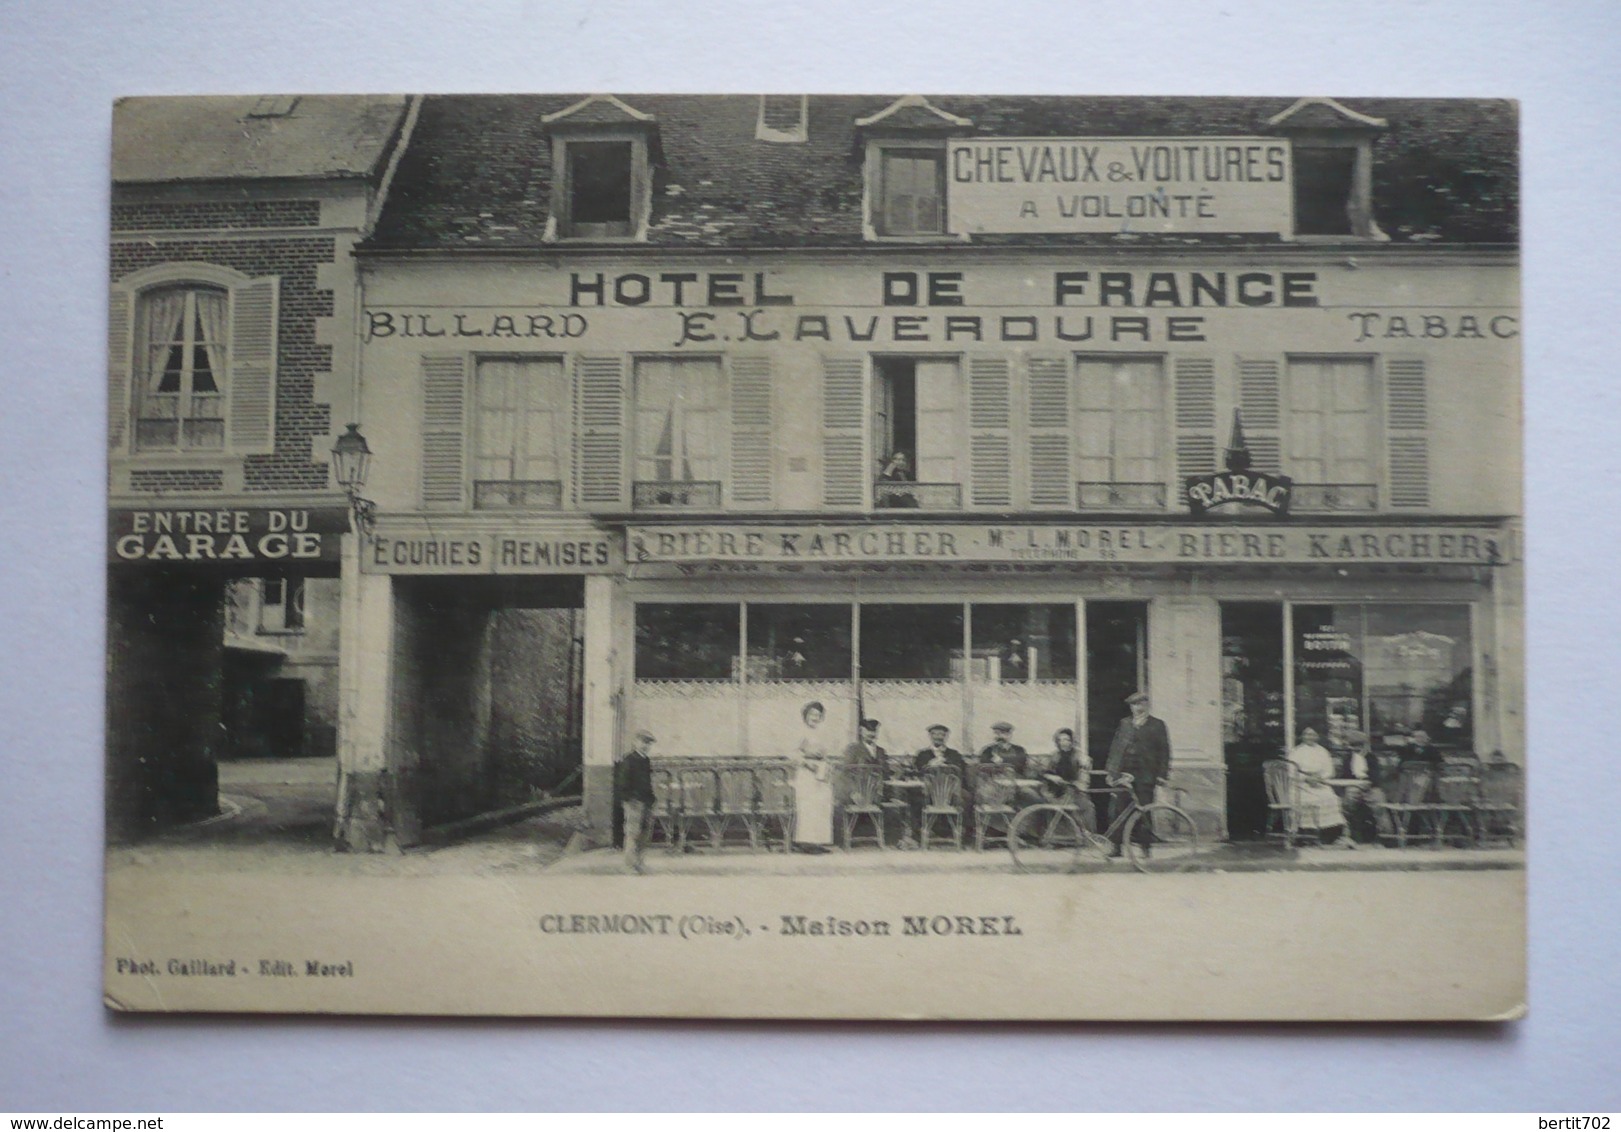 60 - Superbe Carte CLERMONT- MAISON MOREL- Hôtel De France - Billard - Tabac- écuries- Remises - Bière Karcher - Cafés